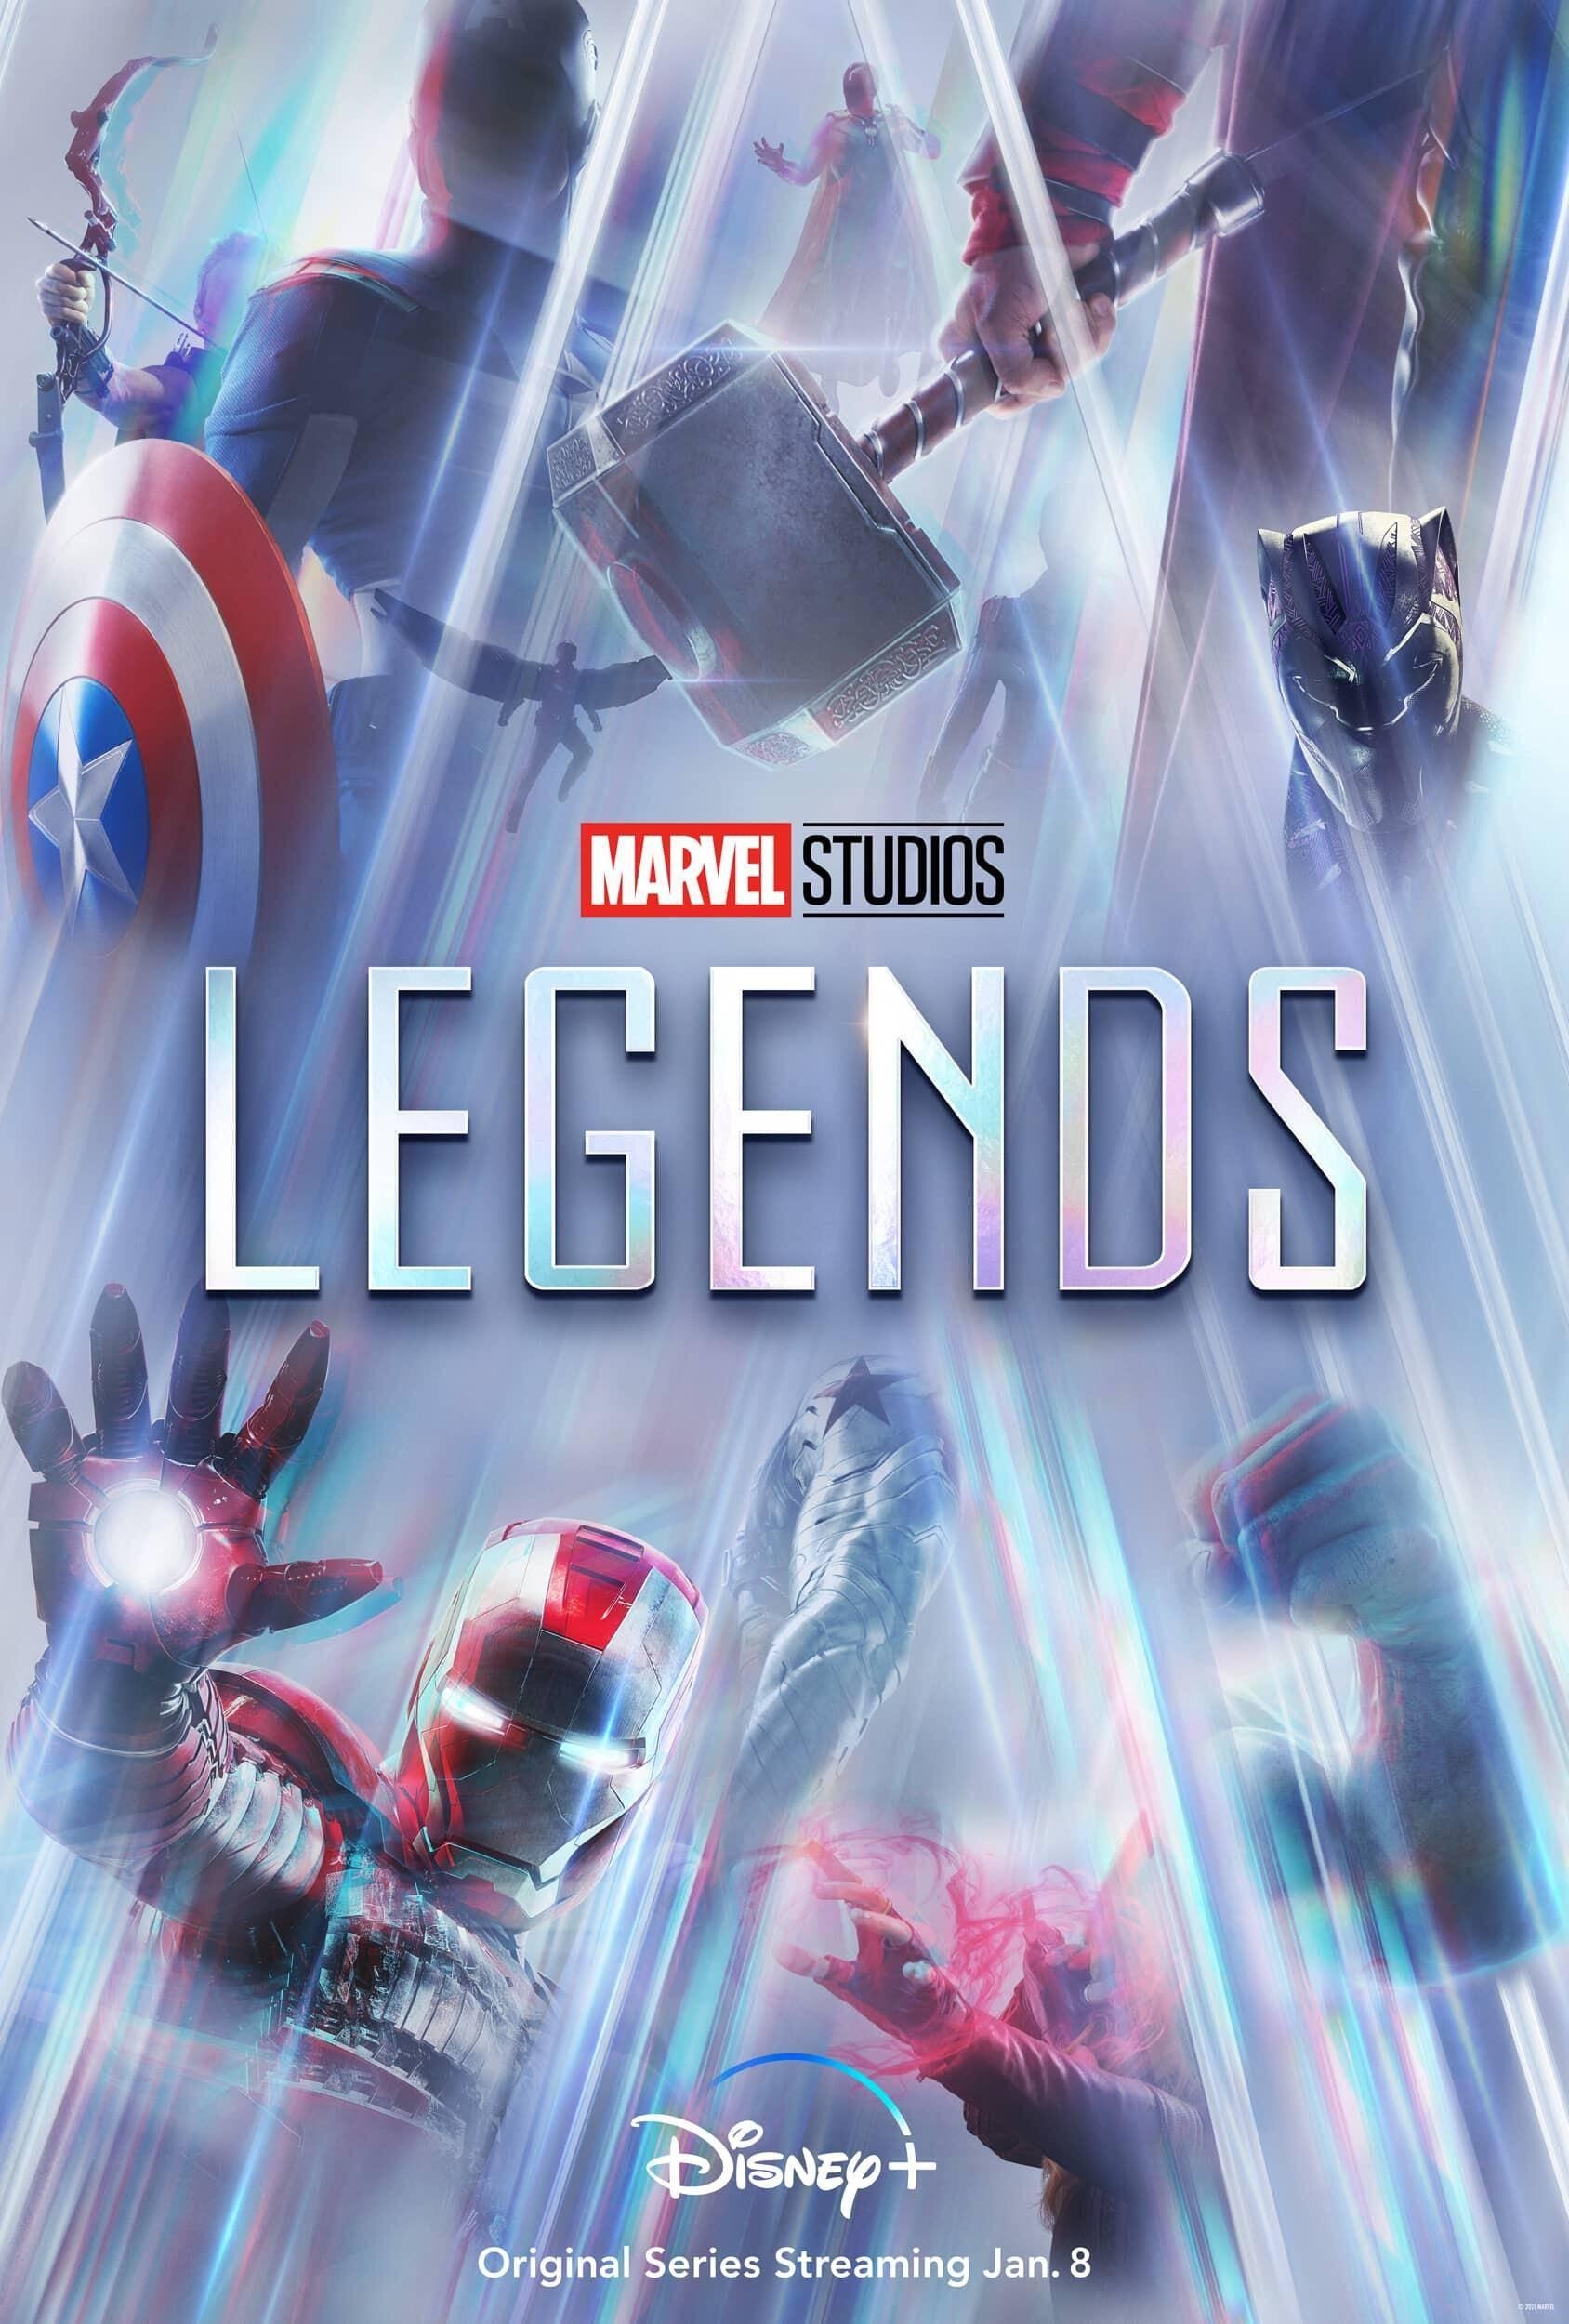 Mega Sized TV Poster Image for Marvel Studios LEGENDS 